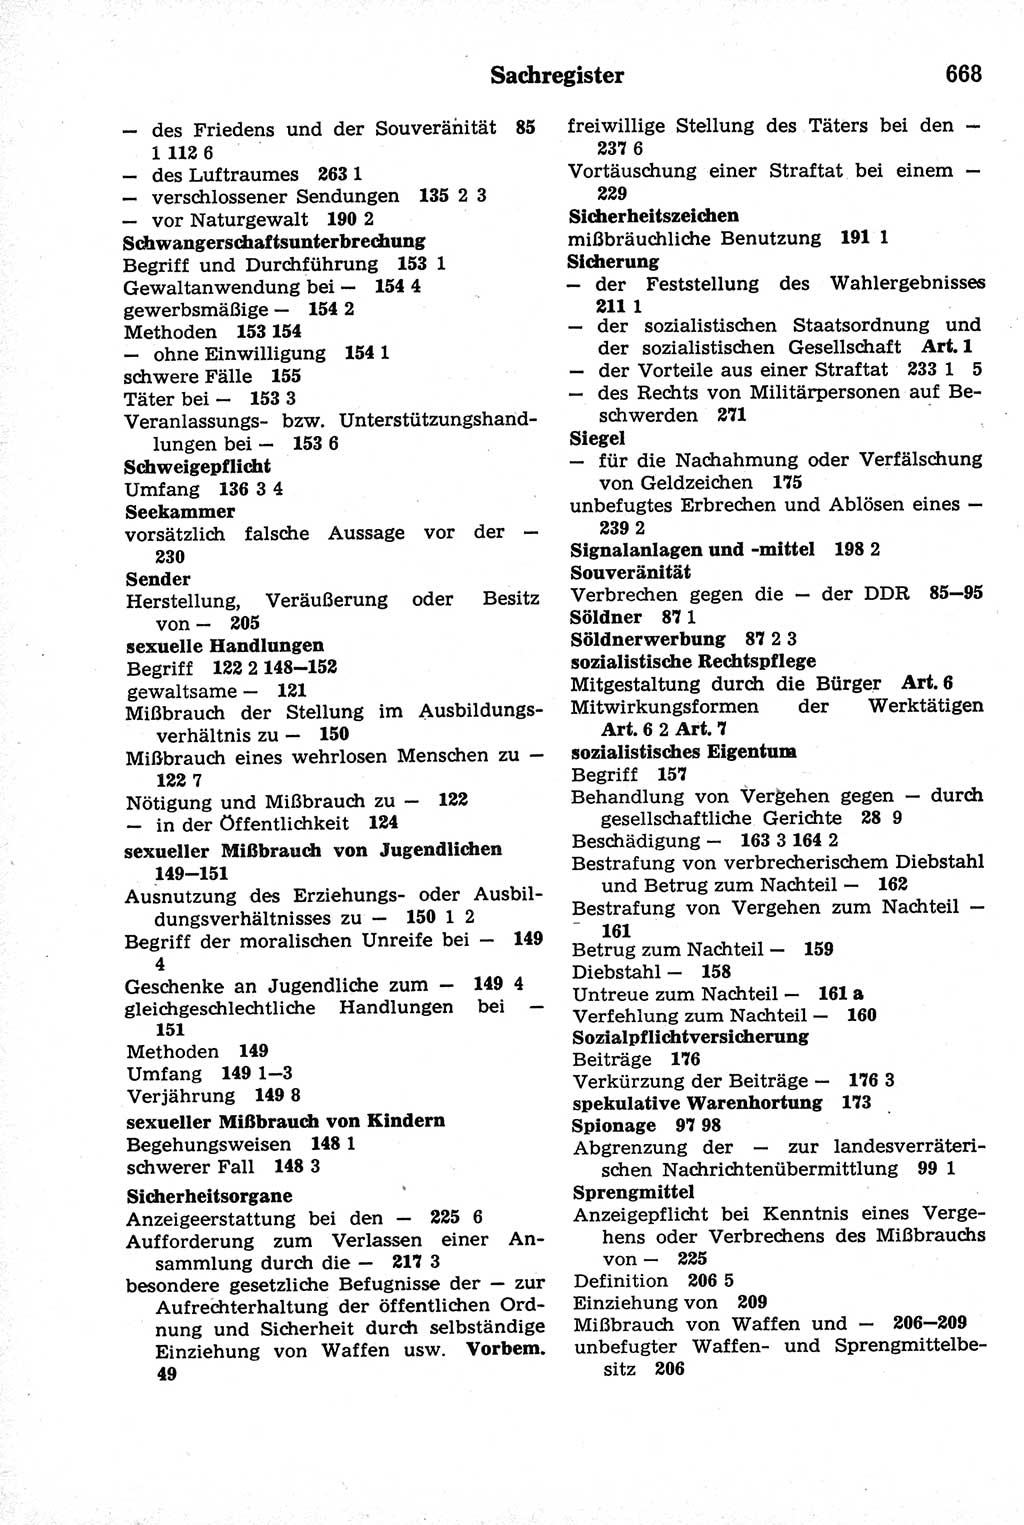 Strafrecht der Deutschen Demokratischen Republik (DDR), Kommentar zum Strafgesetzbuch (StGB) 1981, Seite 668 (Strafr. DDR Komm. StGB 1981, S. 668)